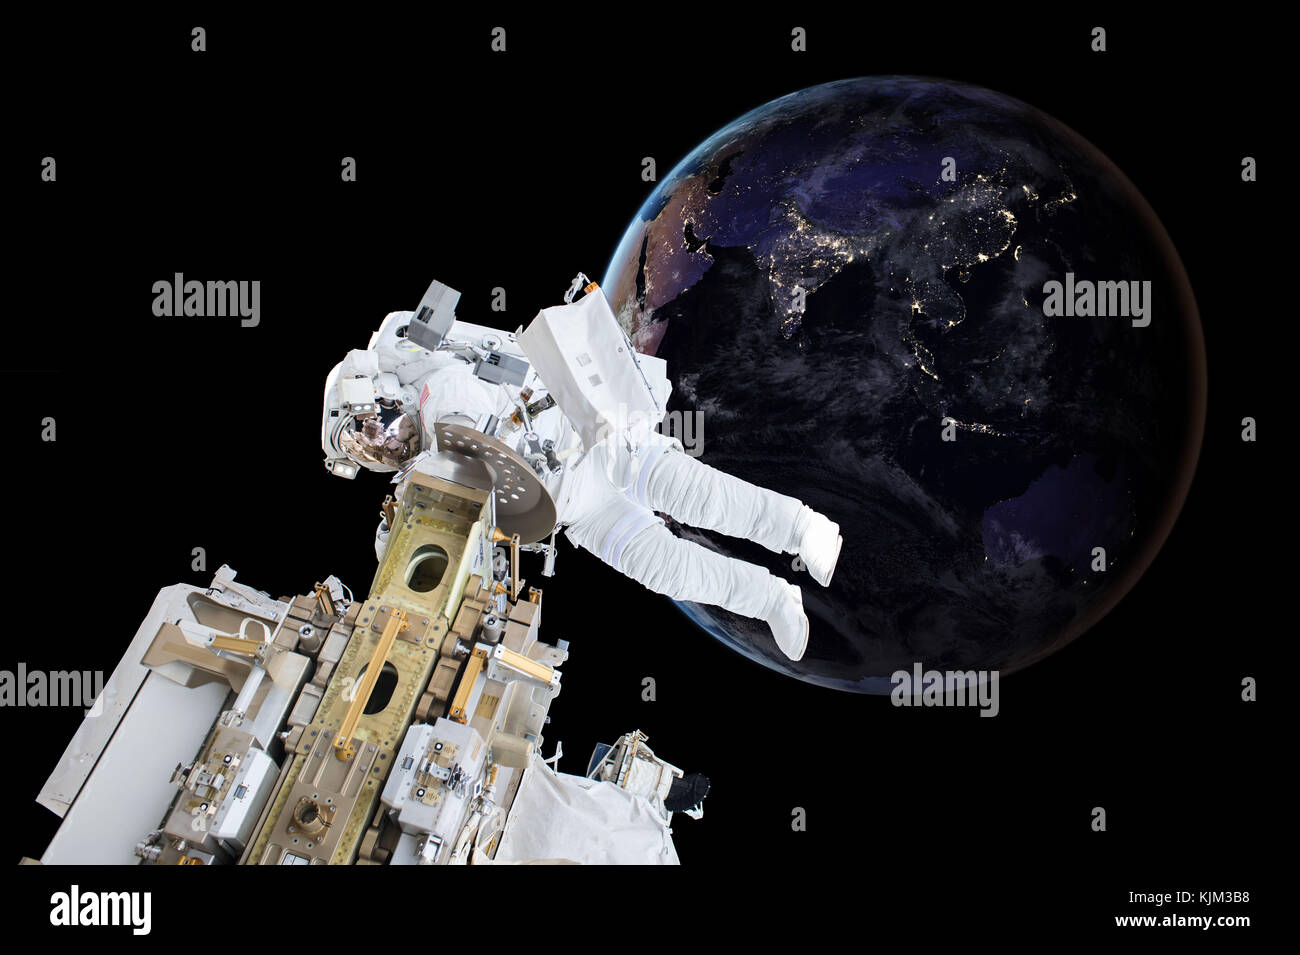 Astronauten schweben in der Nähe eines Planeten Erde. Elemente dieses Bild von der NASA eingerichtet Stockfoto